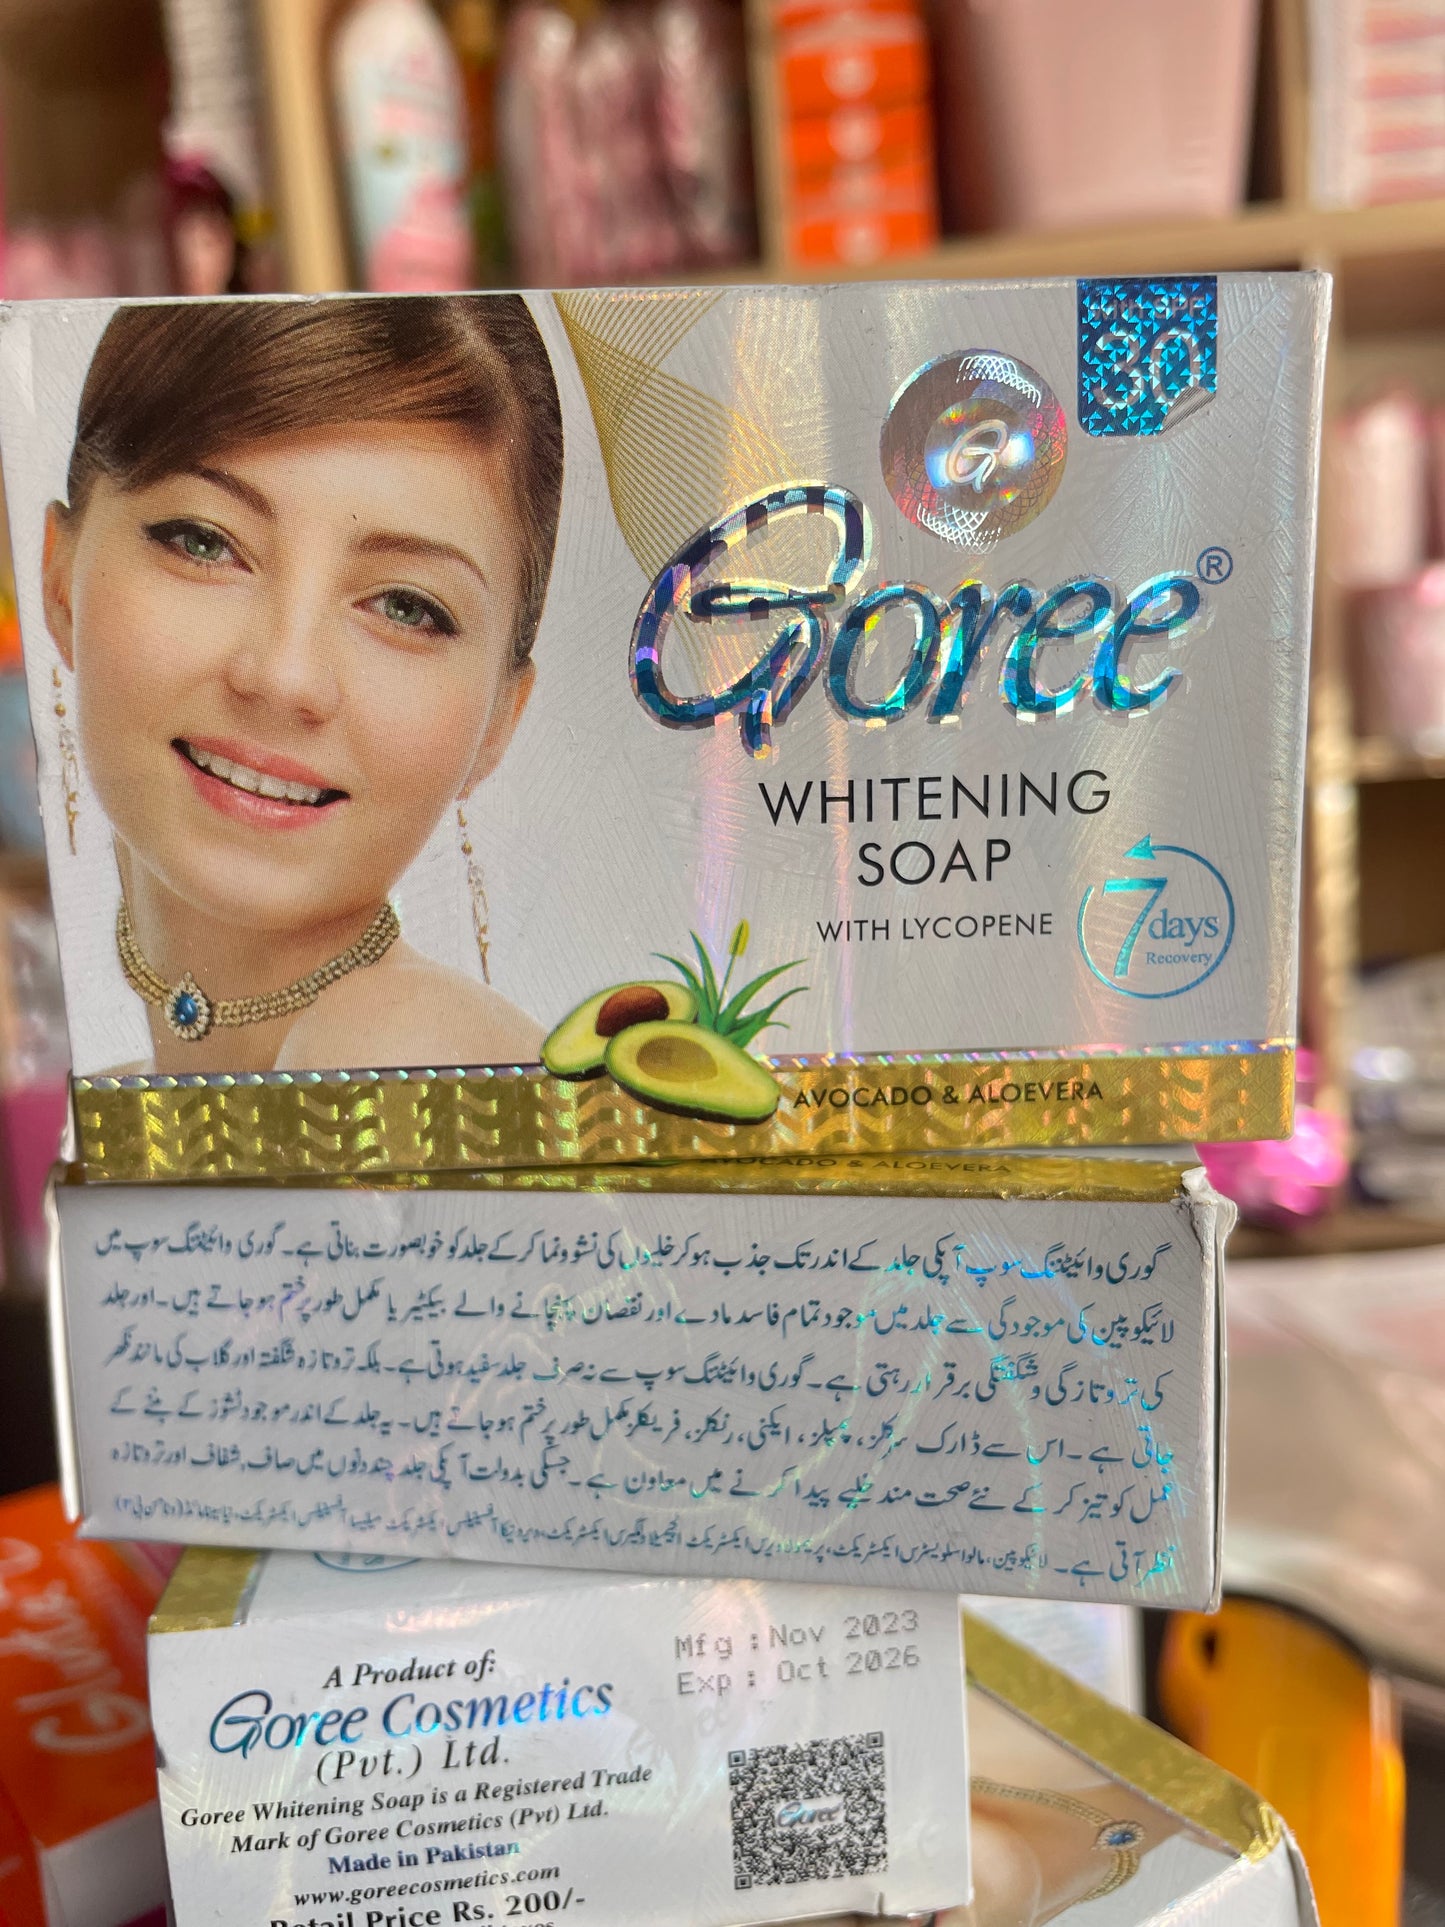 Goree Whitening Soap with Lycopene 100g